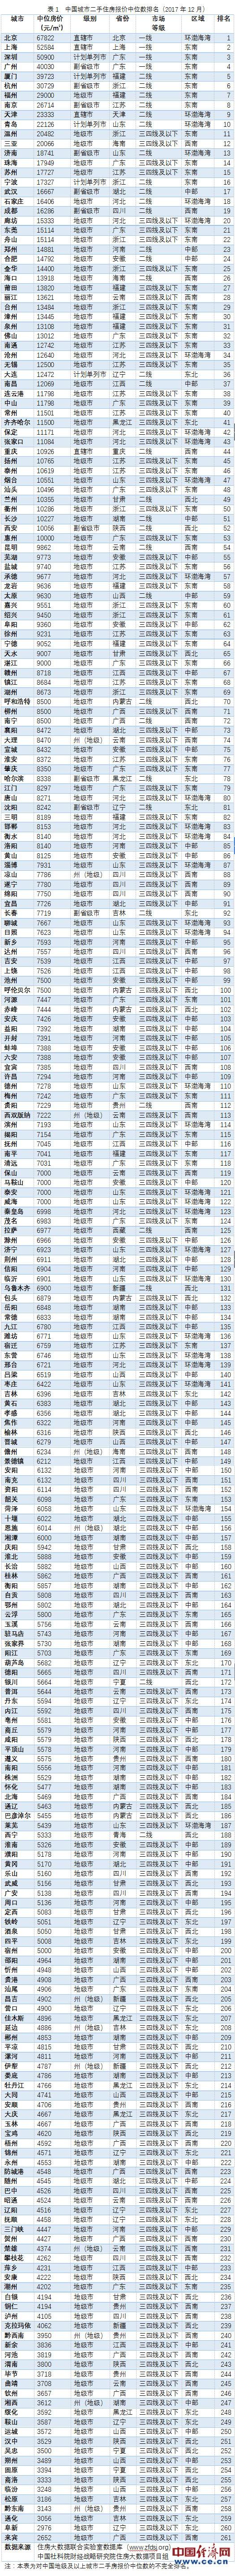 人民网:中国二手房价排名:北京6.8万居首 最低城市仅2600